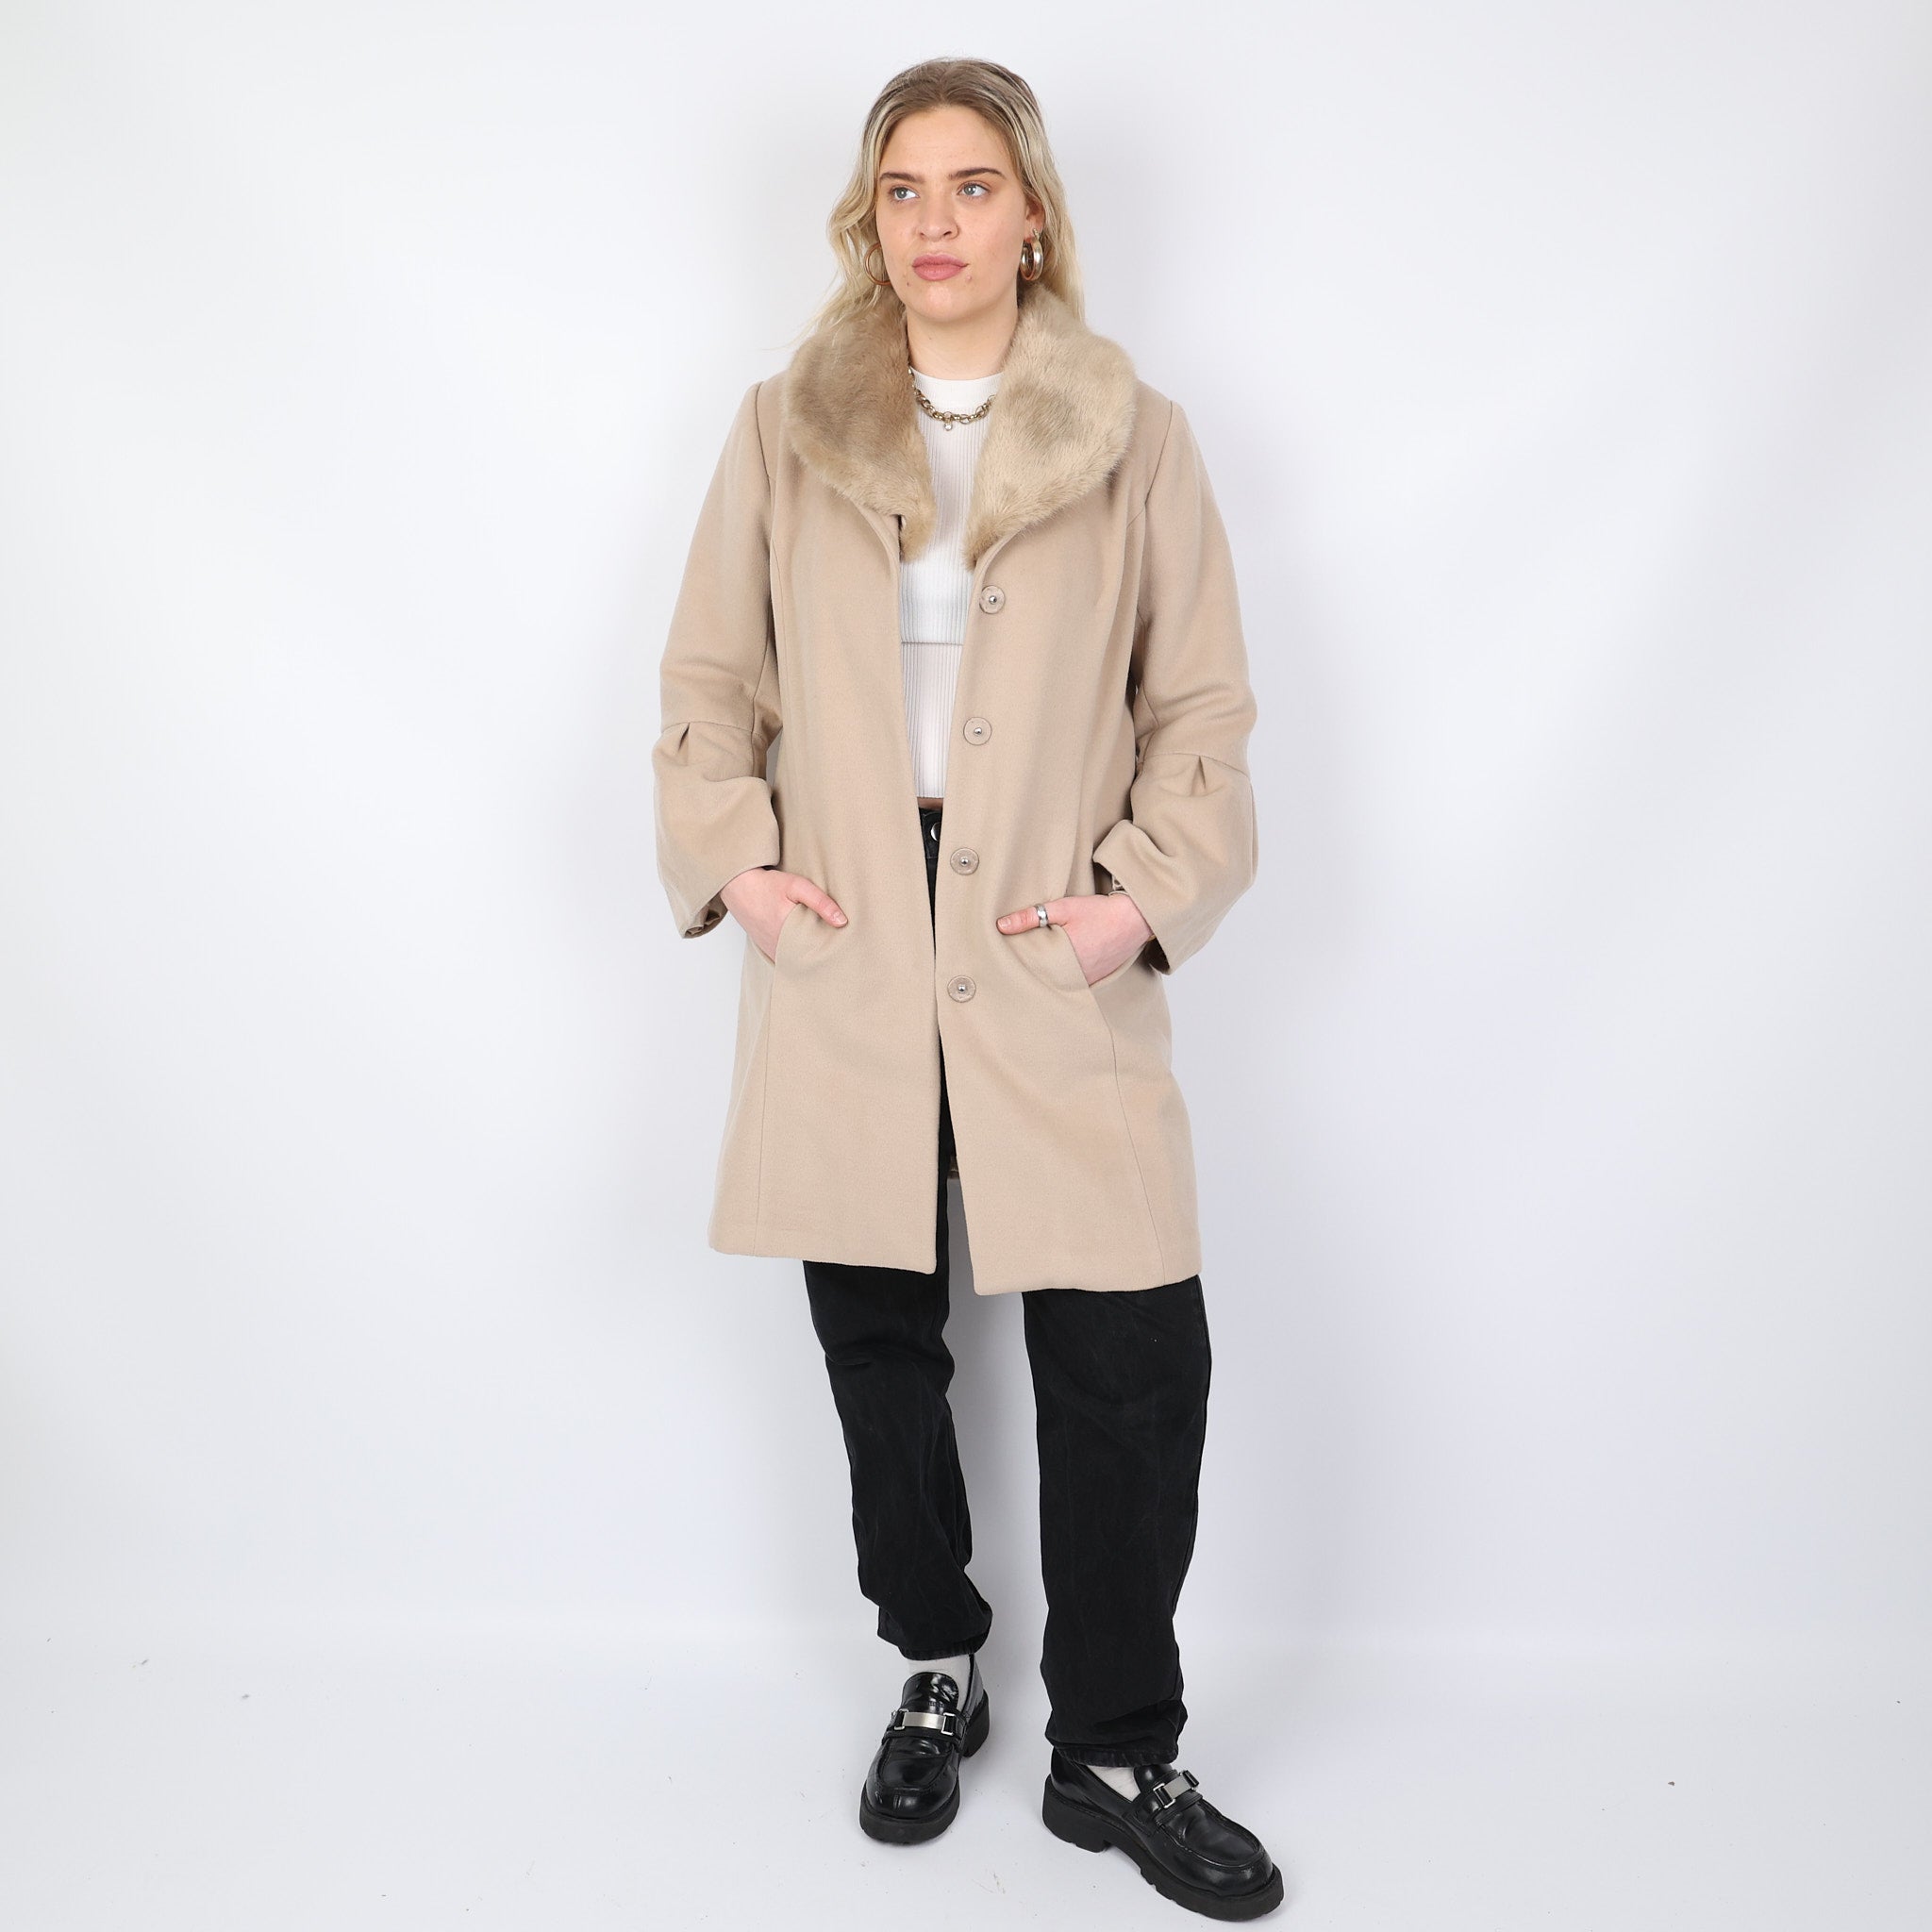 Coat, UK Size 18